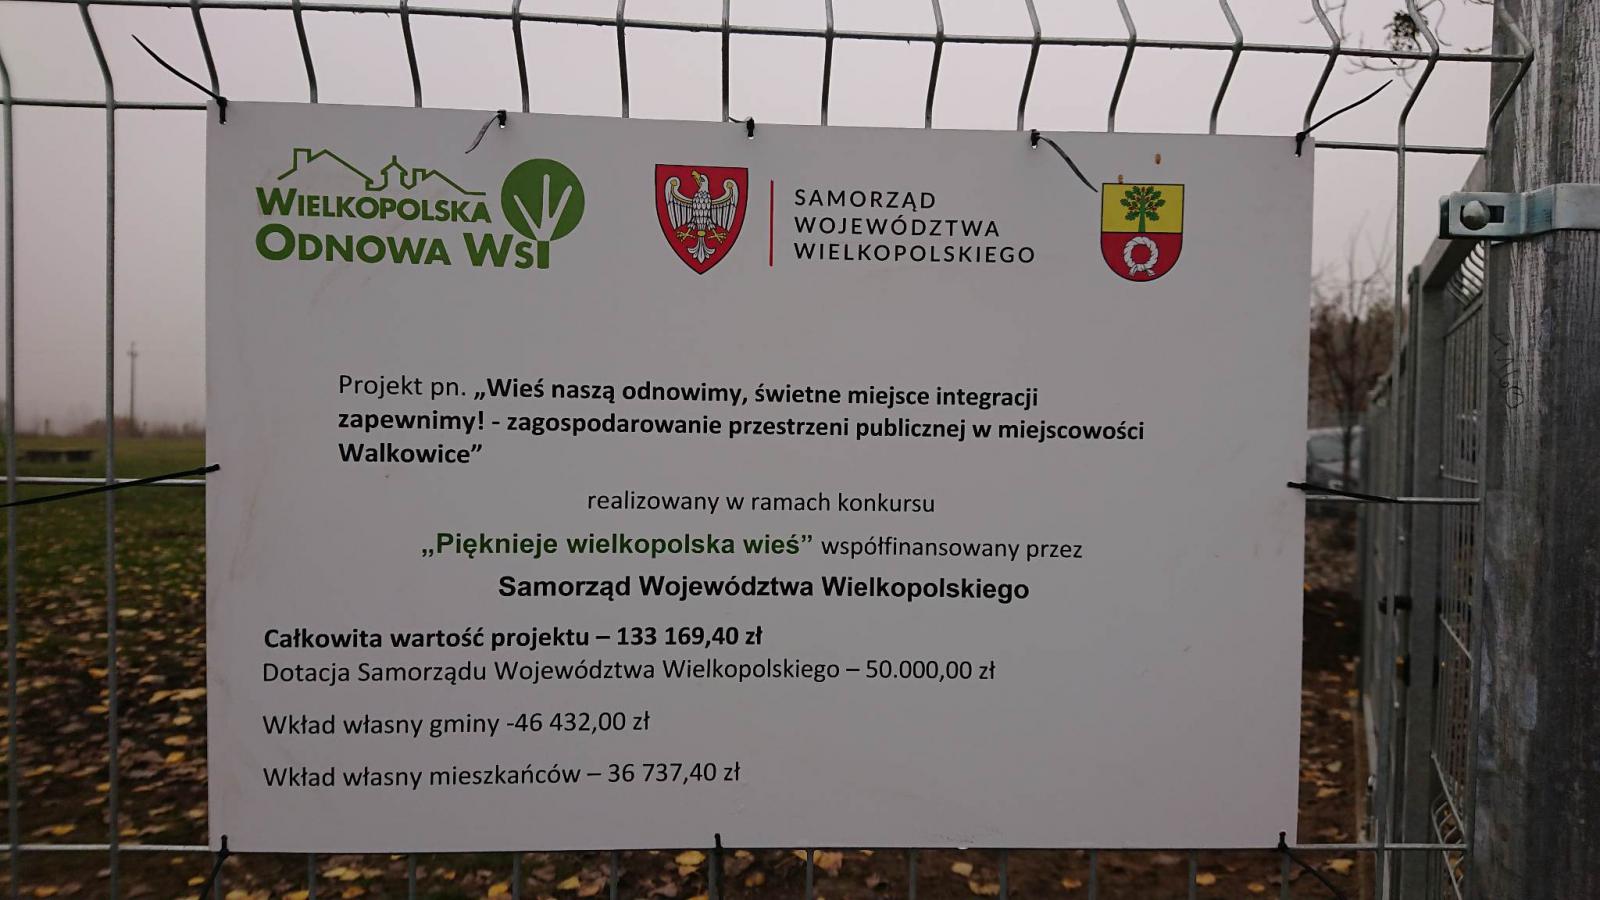 Zakończona została także realizacja zadania inwestycyjnego pn. „Wieś naszą odnawiamy, świetne miejsce integracji zapewniamy!” – zagospodarowanie przestrzeni publicznej w miejscowości Walkowice.